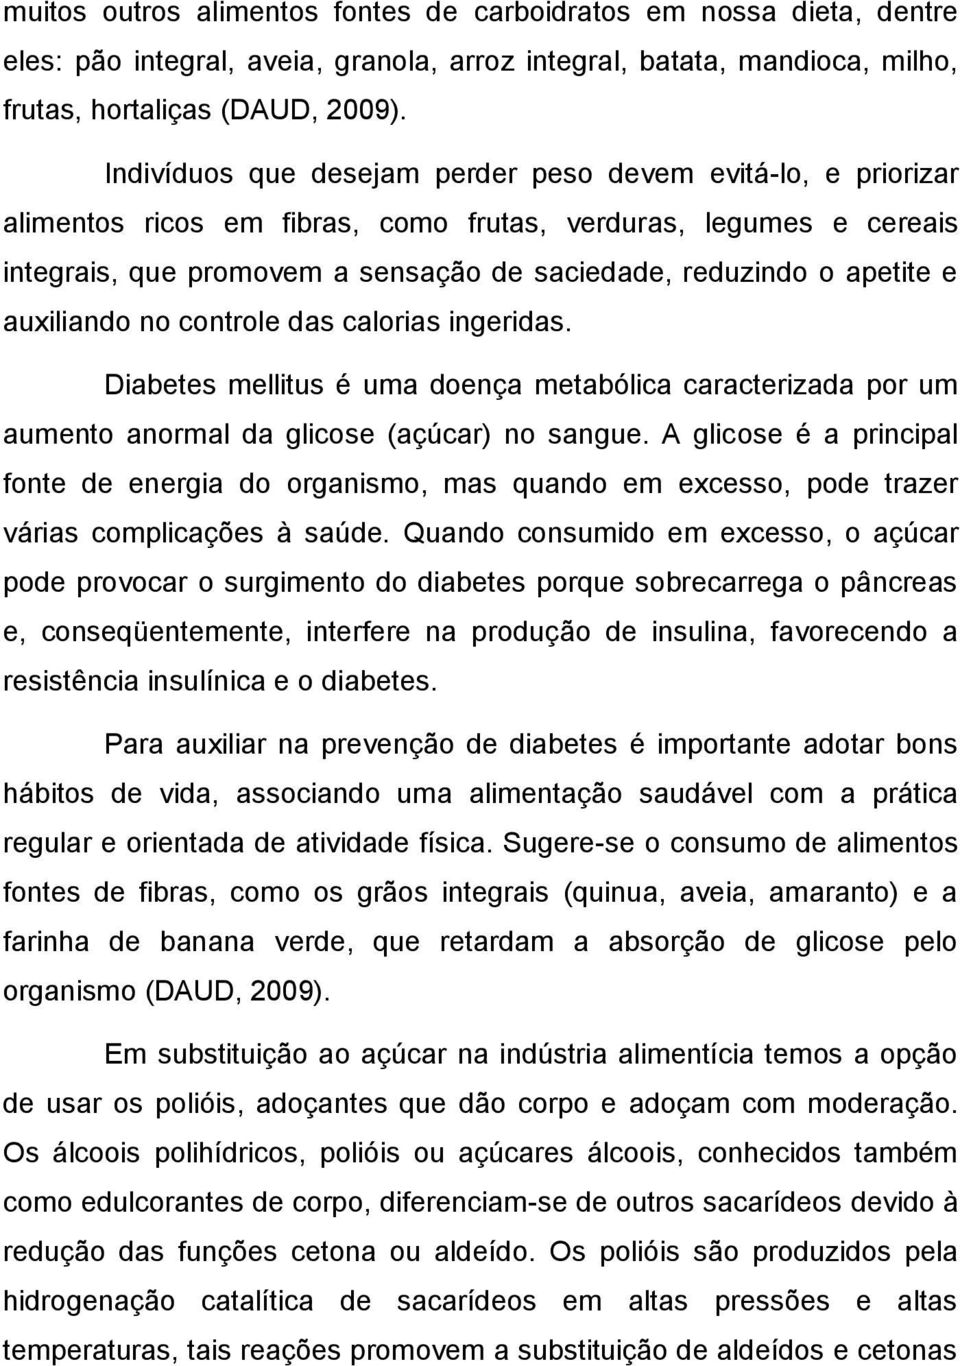 BALAS E PIRULITOS COM RESTRIÇÃO DE AÇUCAR - PDF Free Download